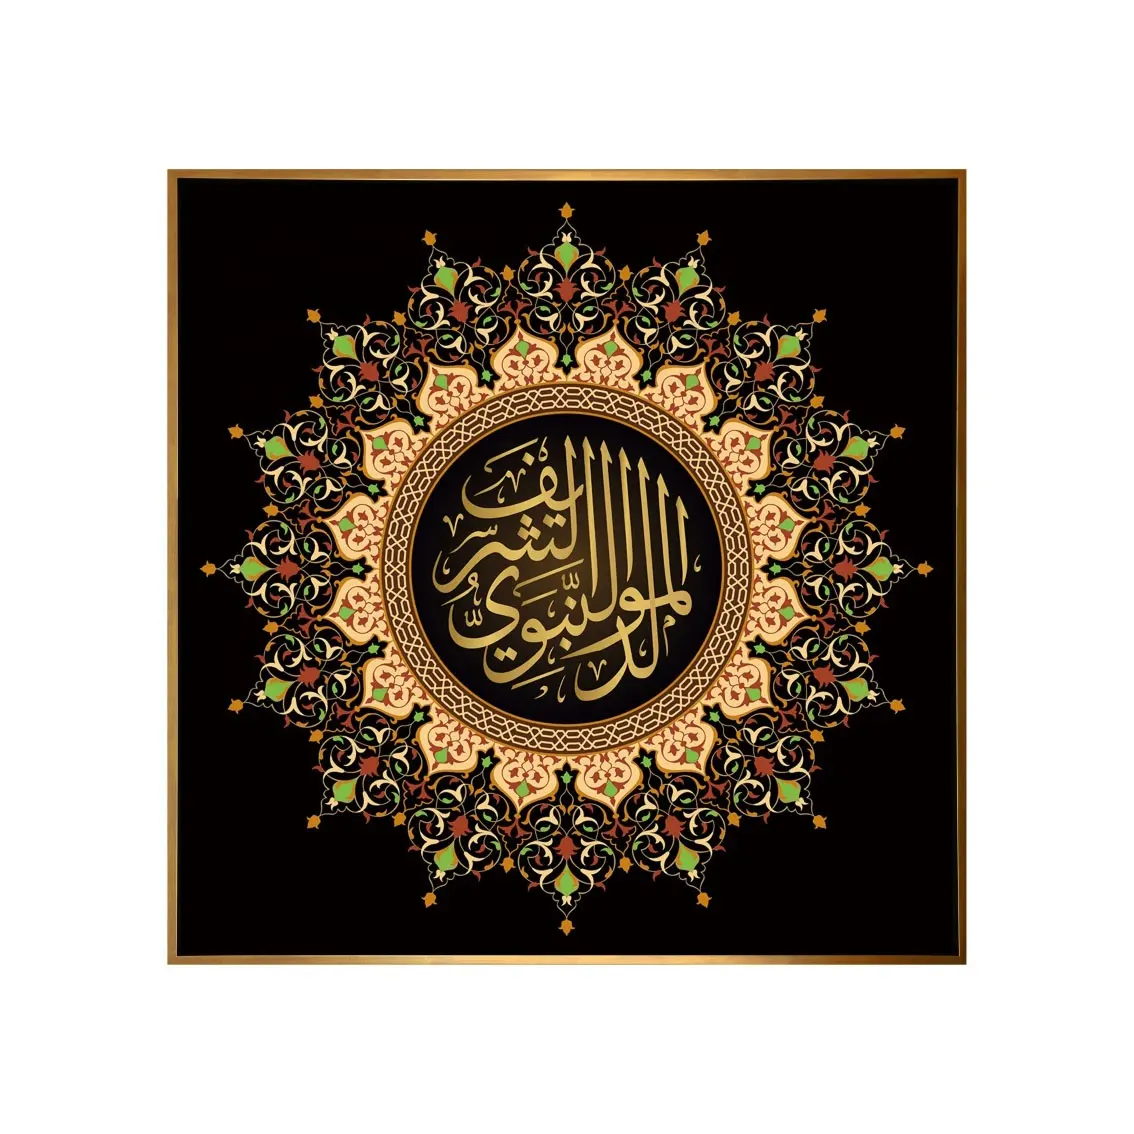 Décoration de la maison calligraphie arabe toile musulmane peinture versets religieux coran décoration murale islamique